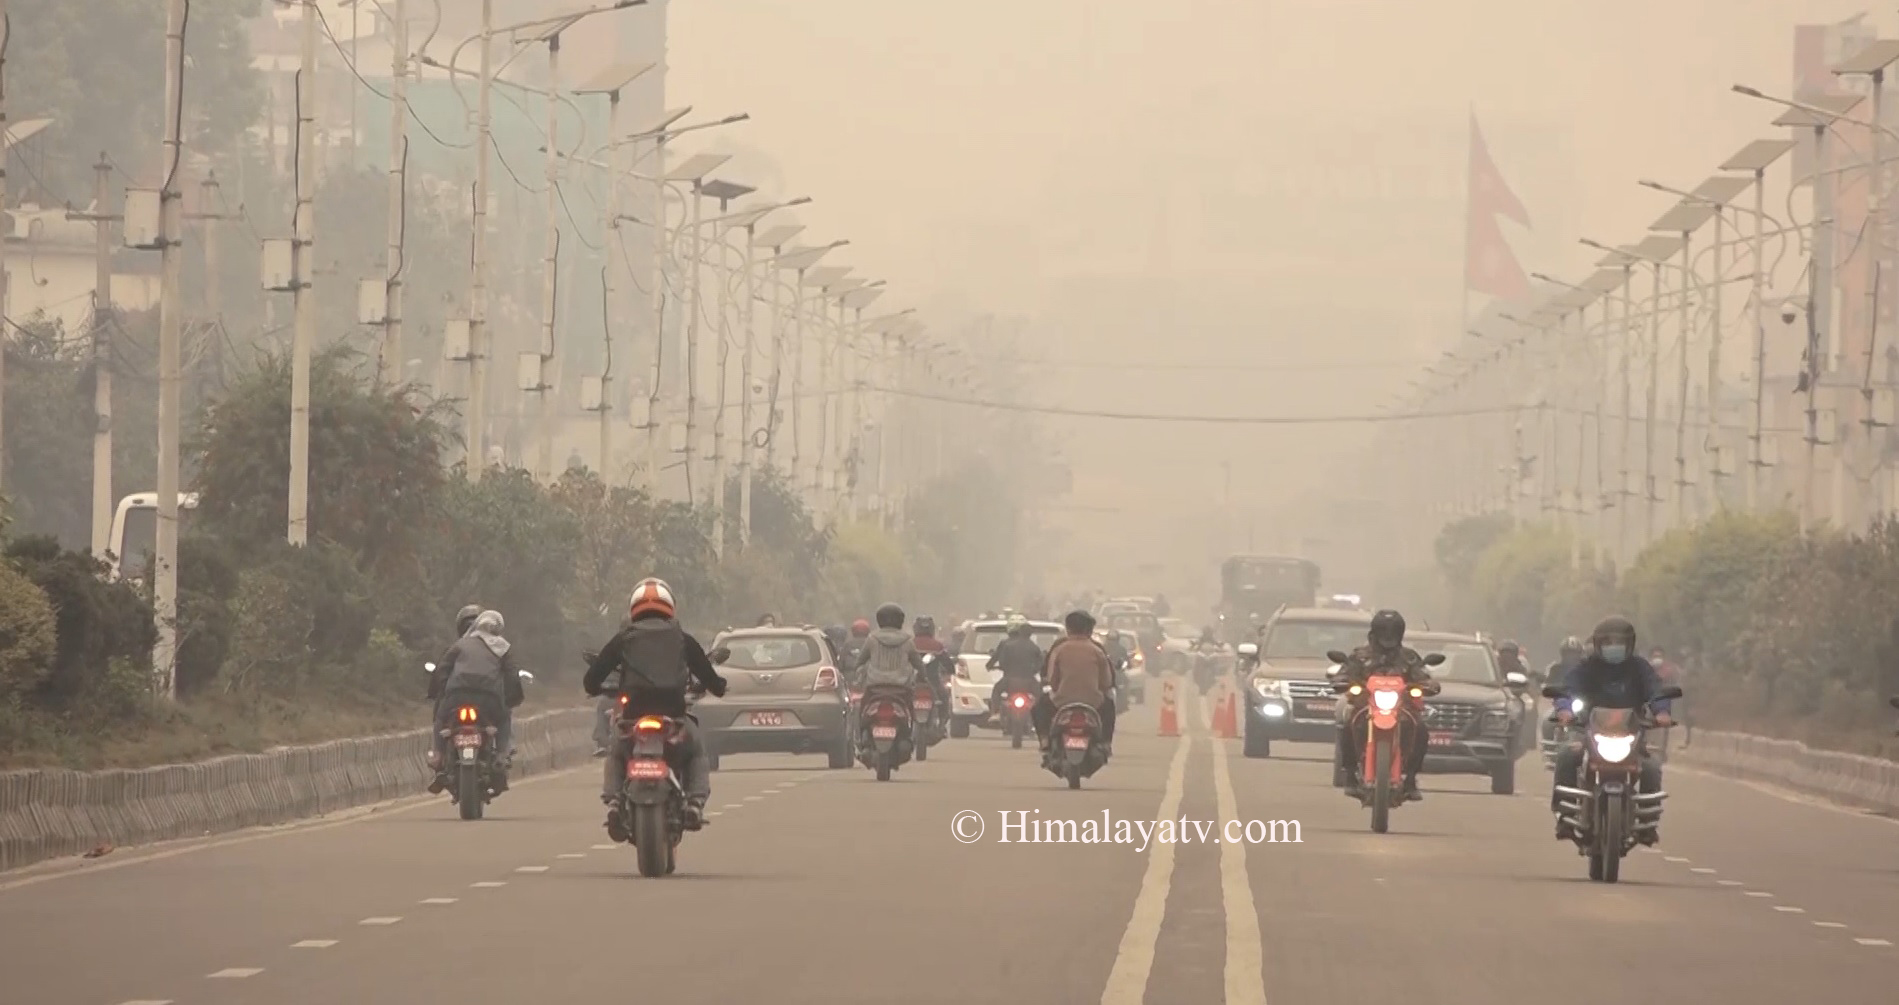 वायु प्रदुषण मानव स्वास्थ्यमा सबैभन्दा ठुलो समस्याः विश्व स्वास्थ्य संगठन